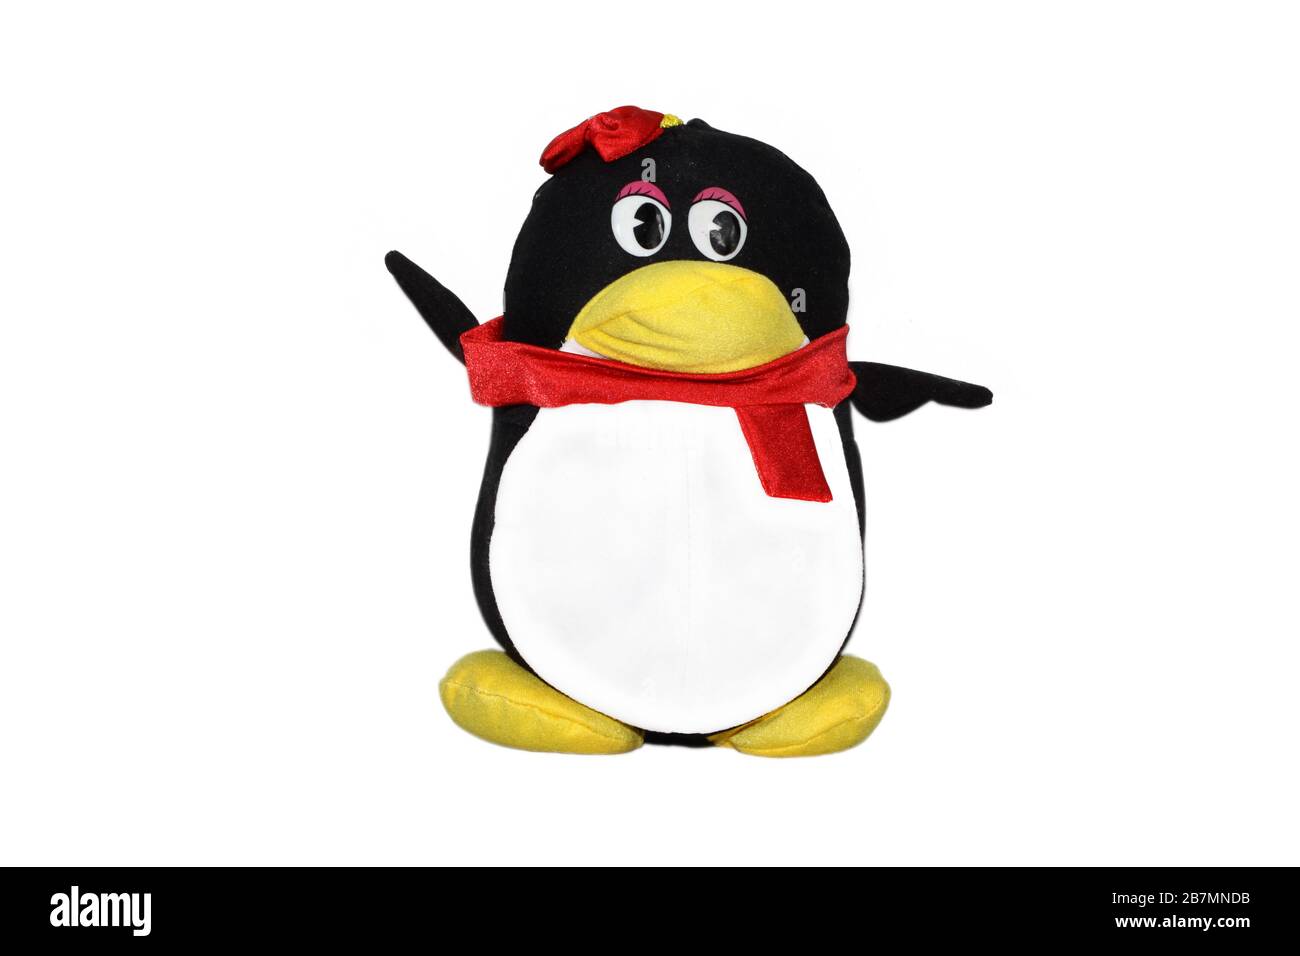 pinguin formt Spielzeug auf weißem Hintergrund, sehr interessant. Stockfoto